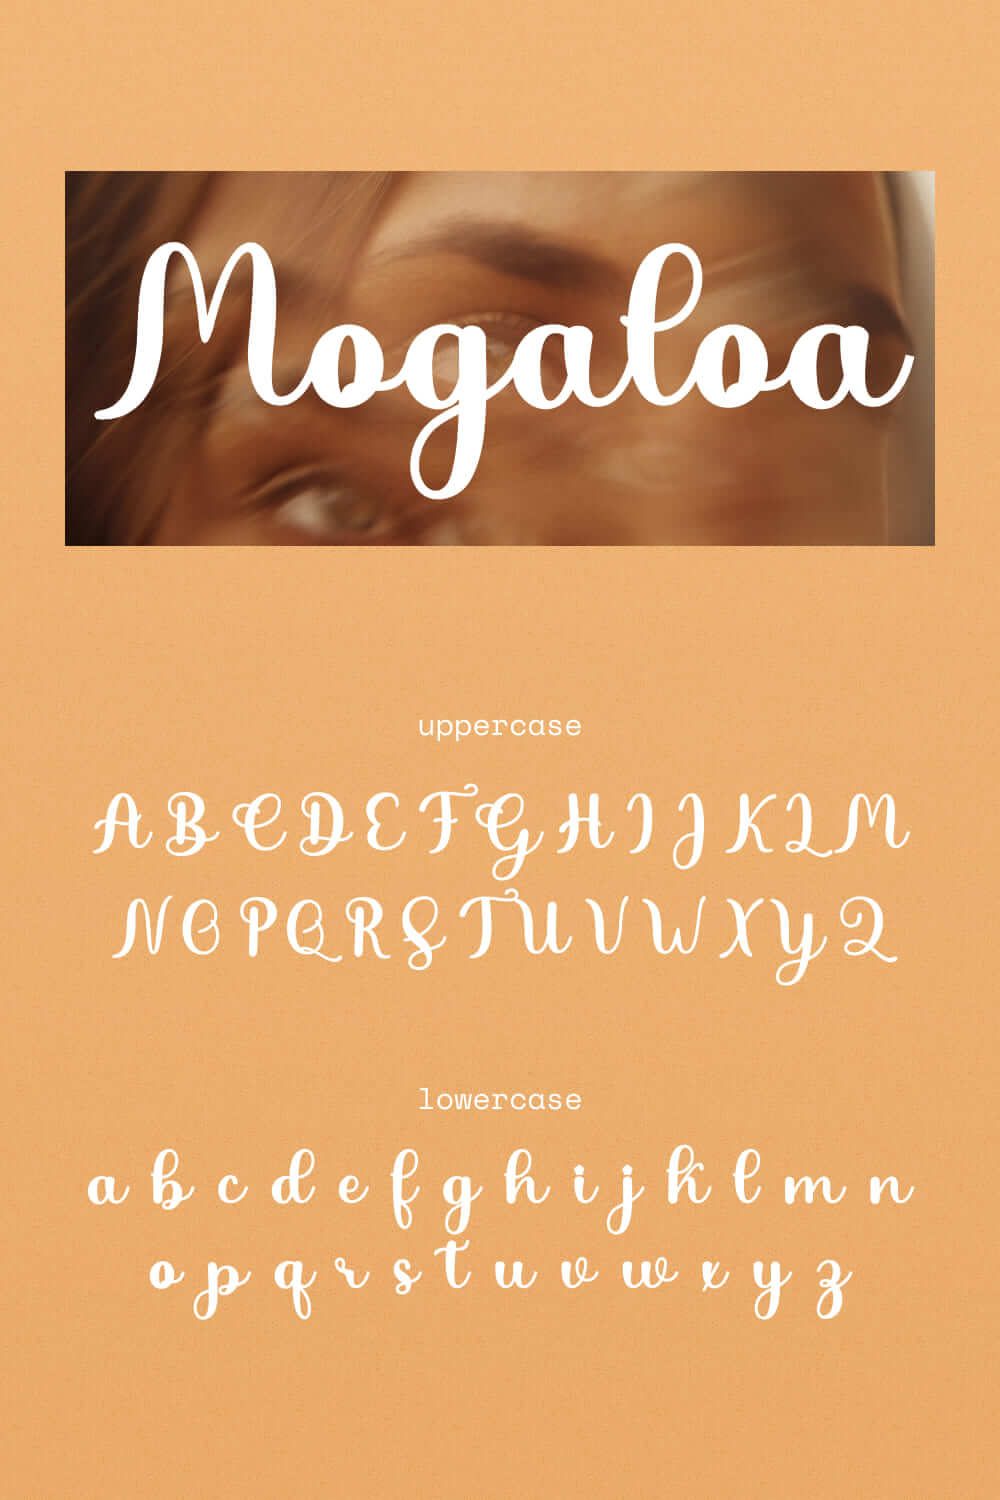 mogaloa beautiful modern calligraphy font pinterest image.